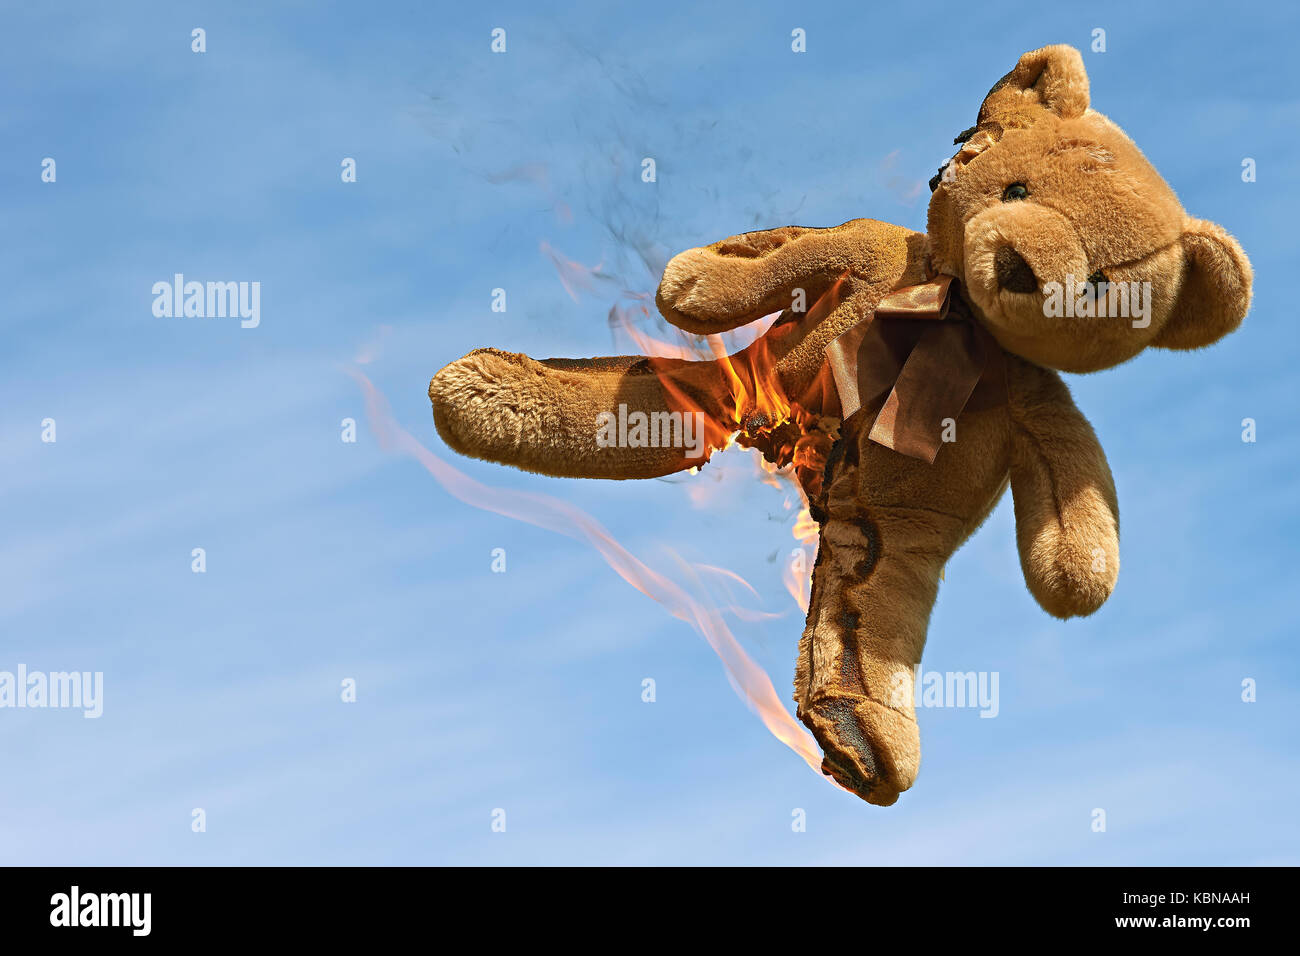 La masterizzazione di Teddy bear contro un cielo blu Foto Stock